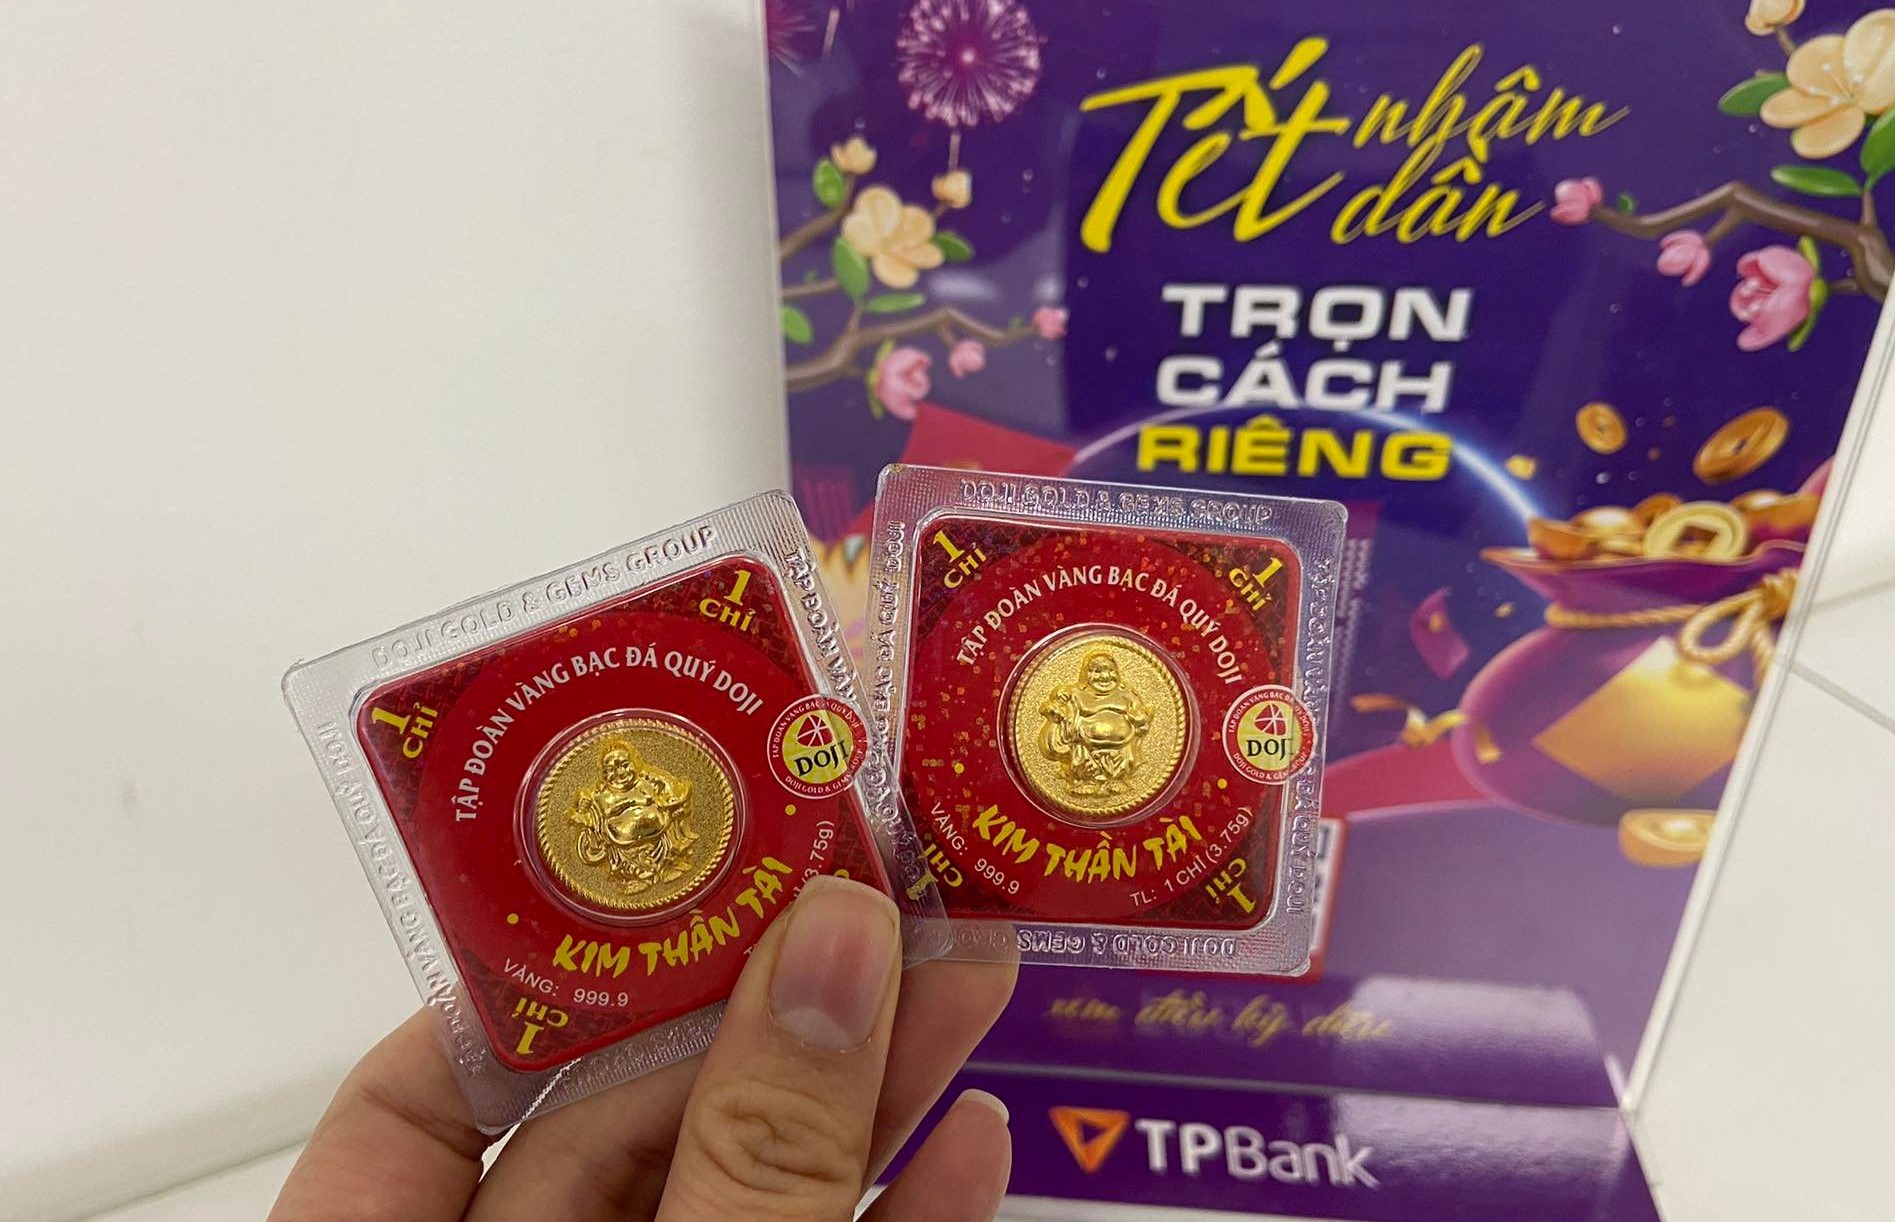 Ngày Thần Tài năm nay, tới TPBank rinh siêu phẩm vàng may mắn - Ảnh 4.